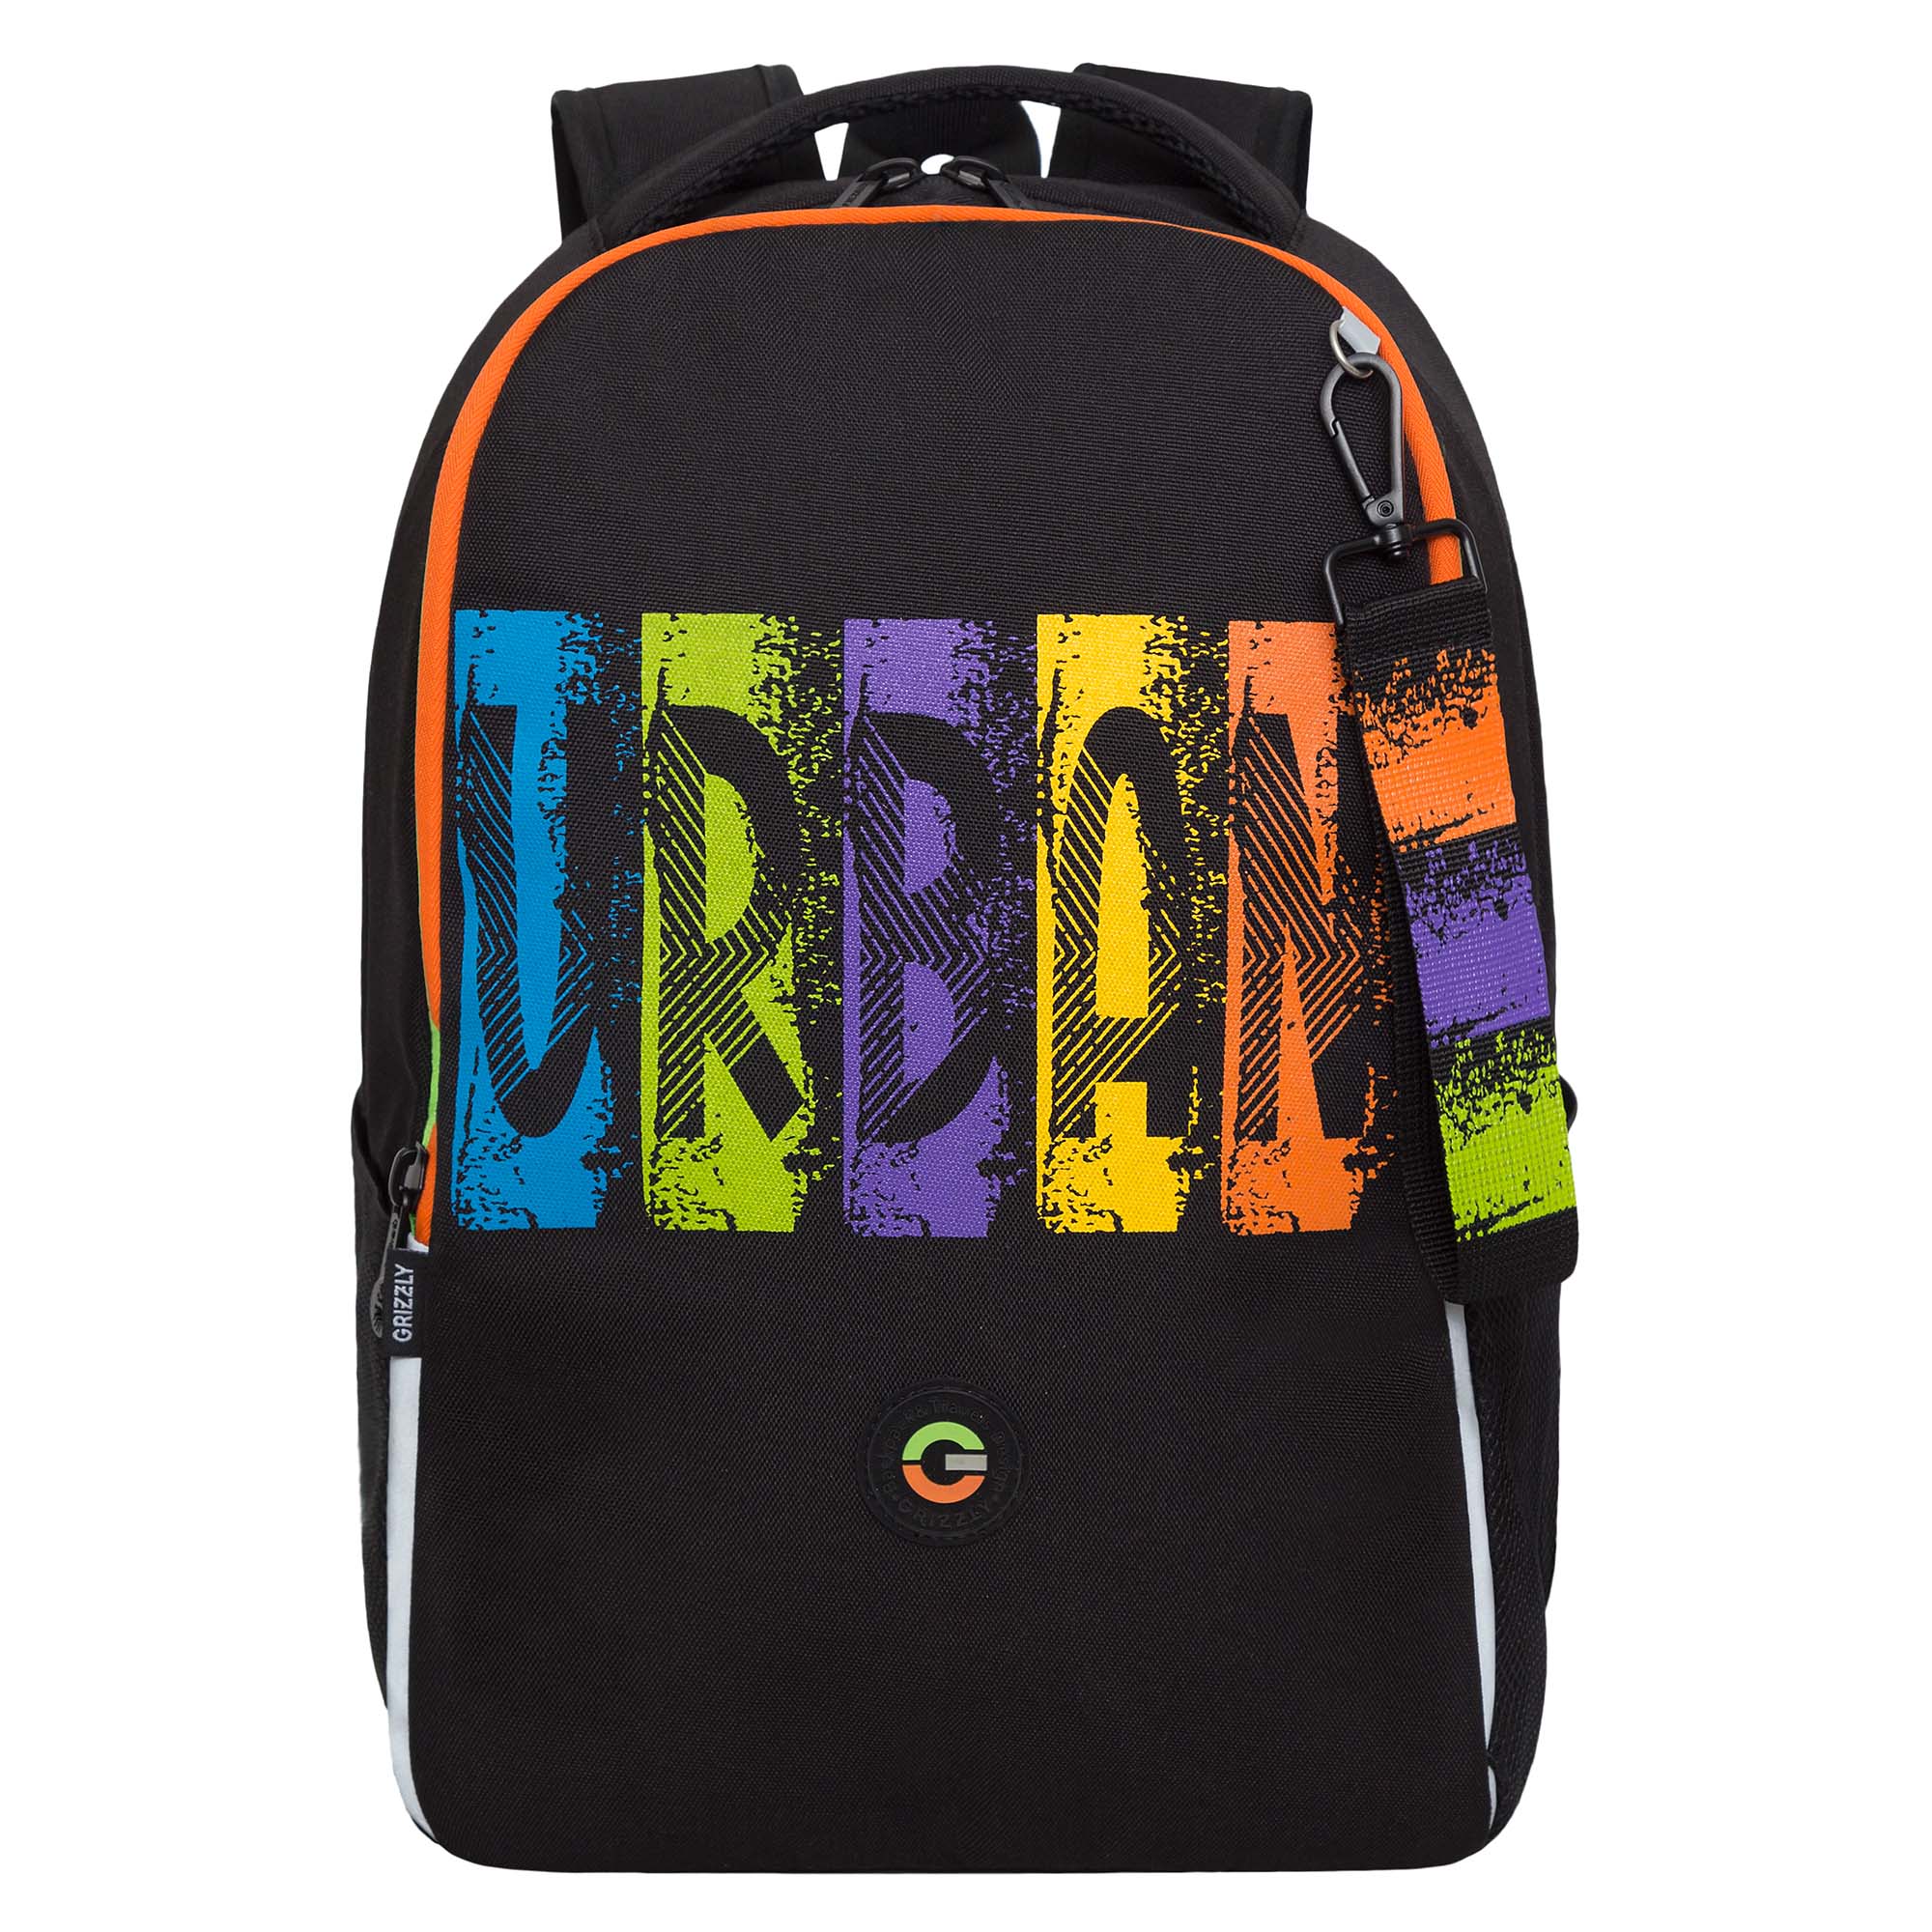 Рюкзак школьный GRIZZLY легкий с жесткой спинкой, 2 отделения, черный, RB-451-3/1 рюкзак школьный сool pack base sugar babes 44х29х16 см 27 л 2 отделения